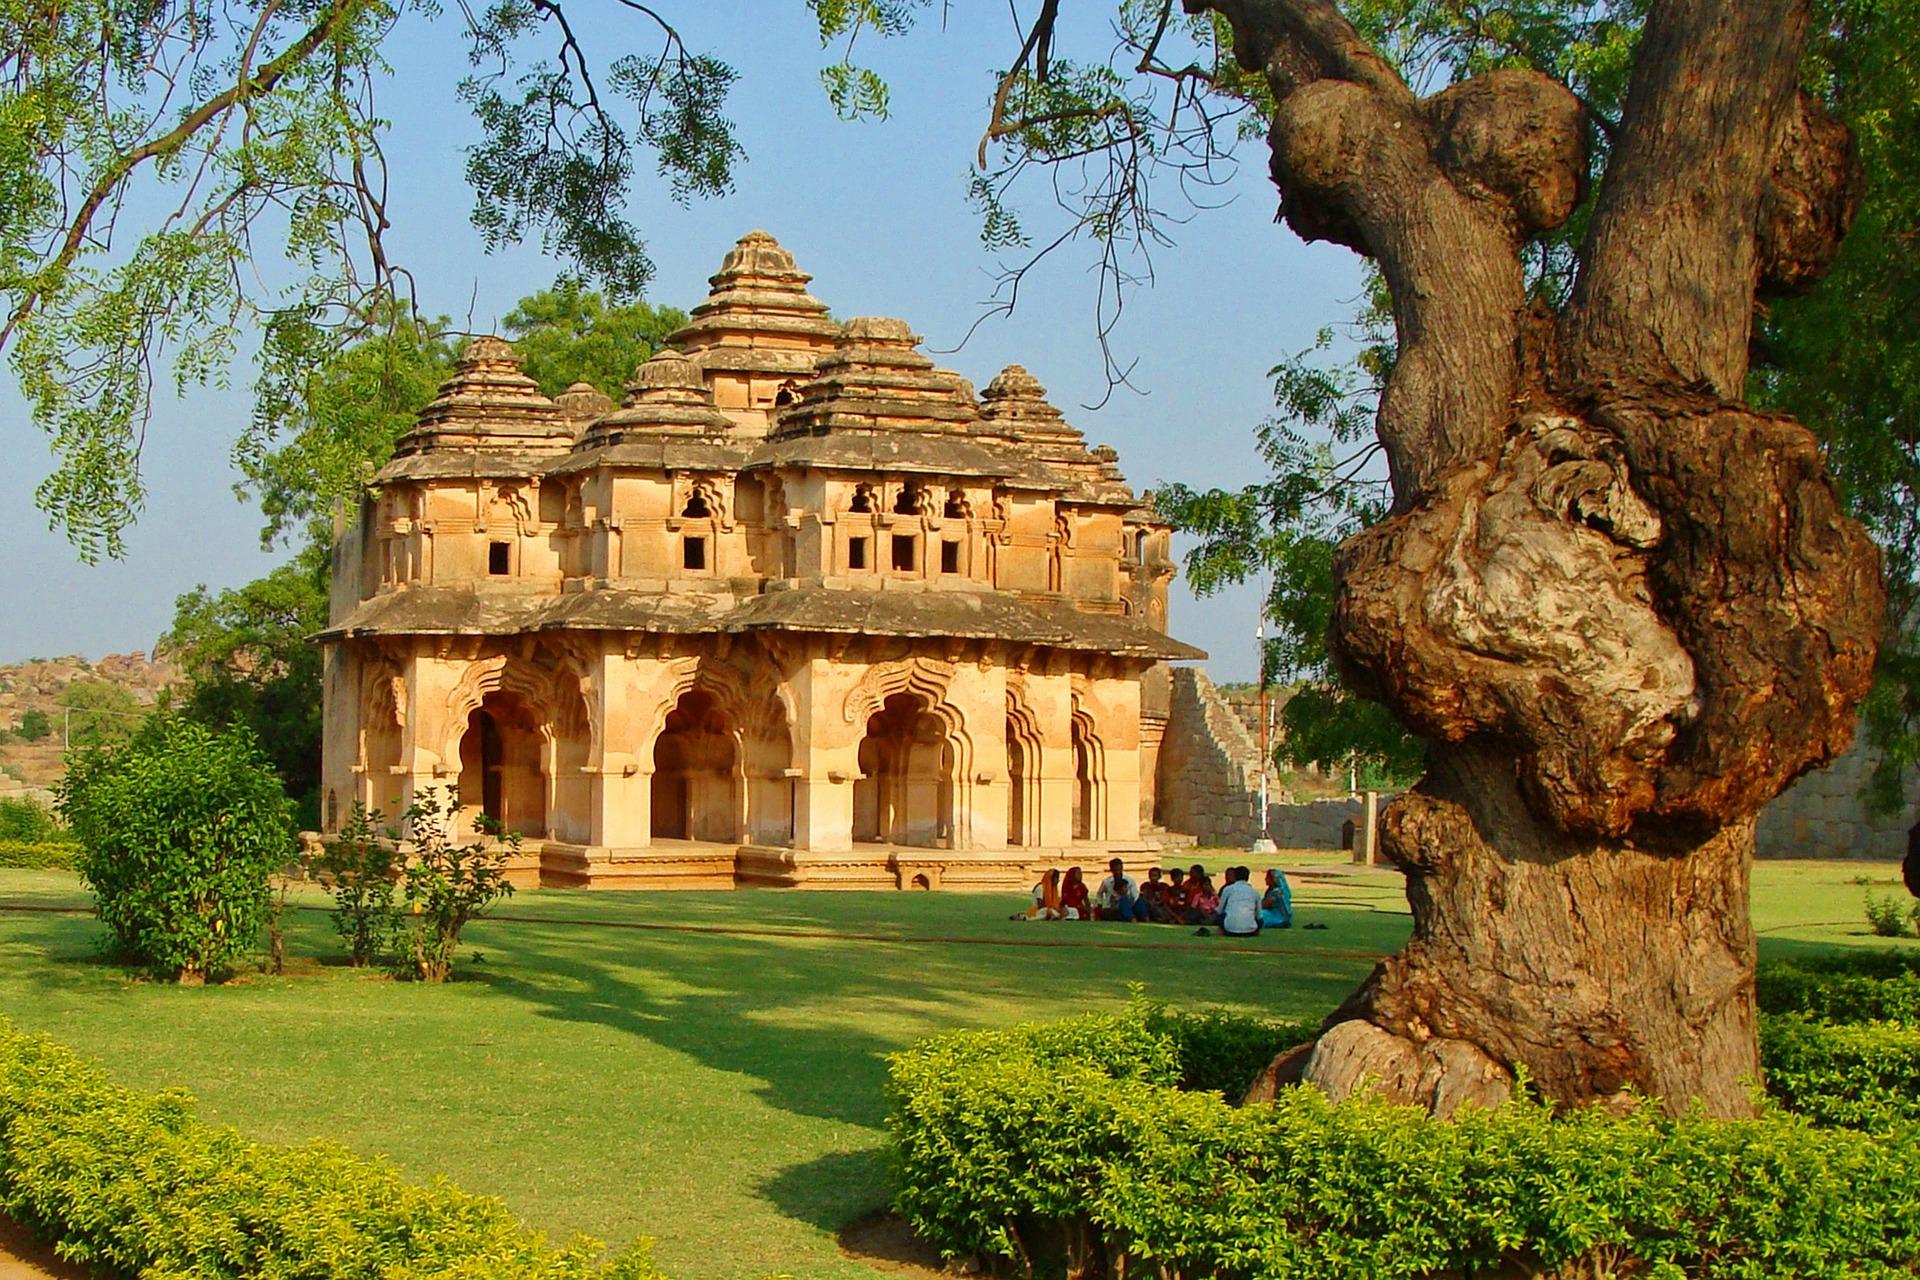 Campo di lavoro in India nella conservazione del patrimonio artistico-culturale